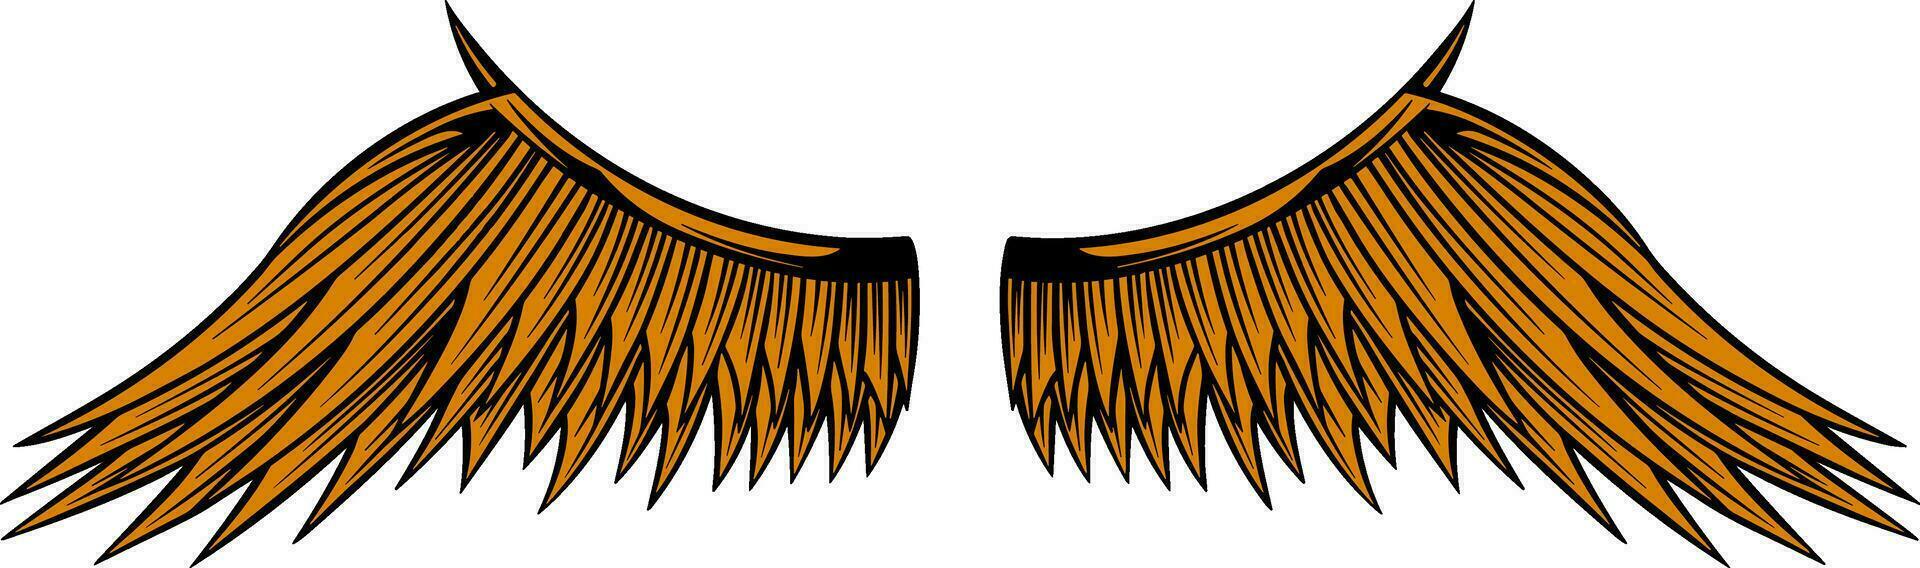 Örn vingar vektor design. illustration